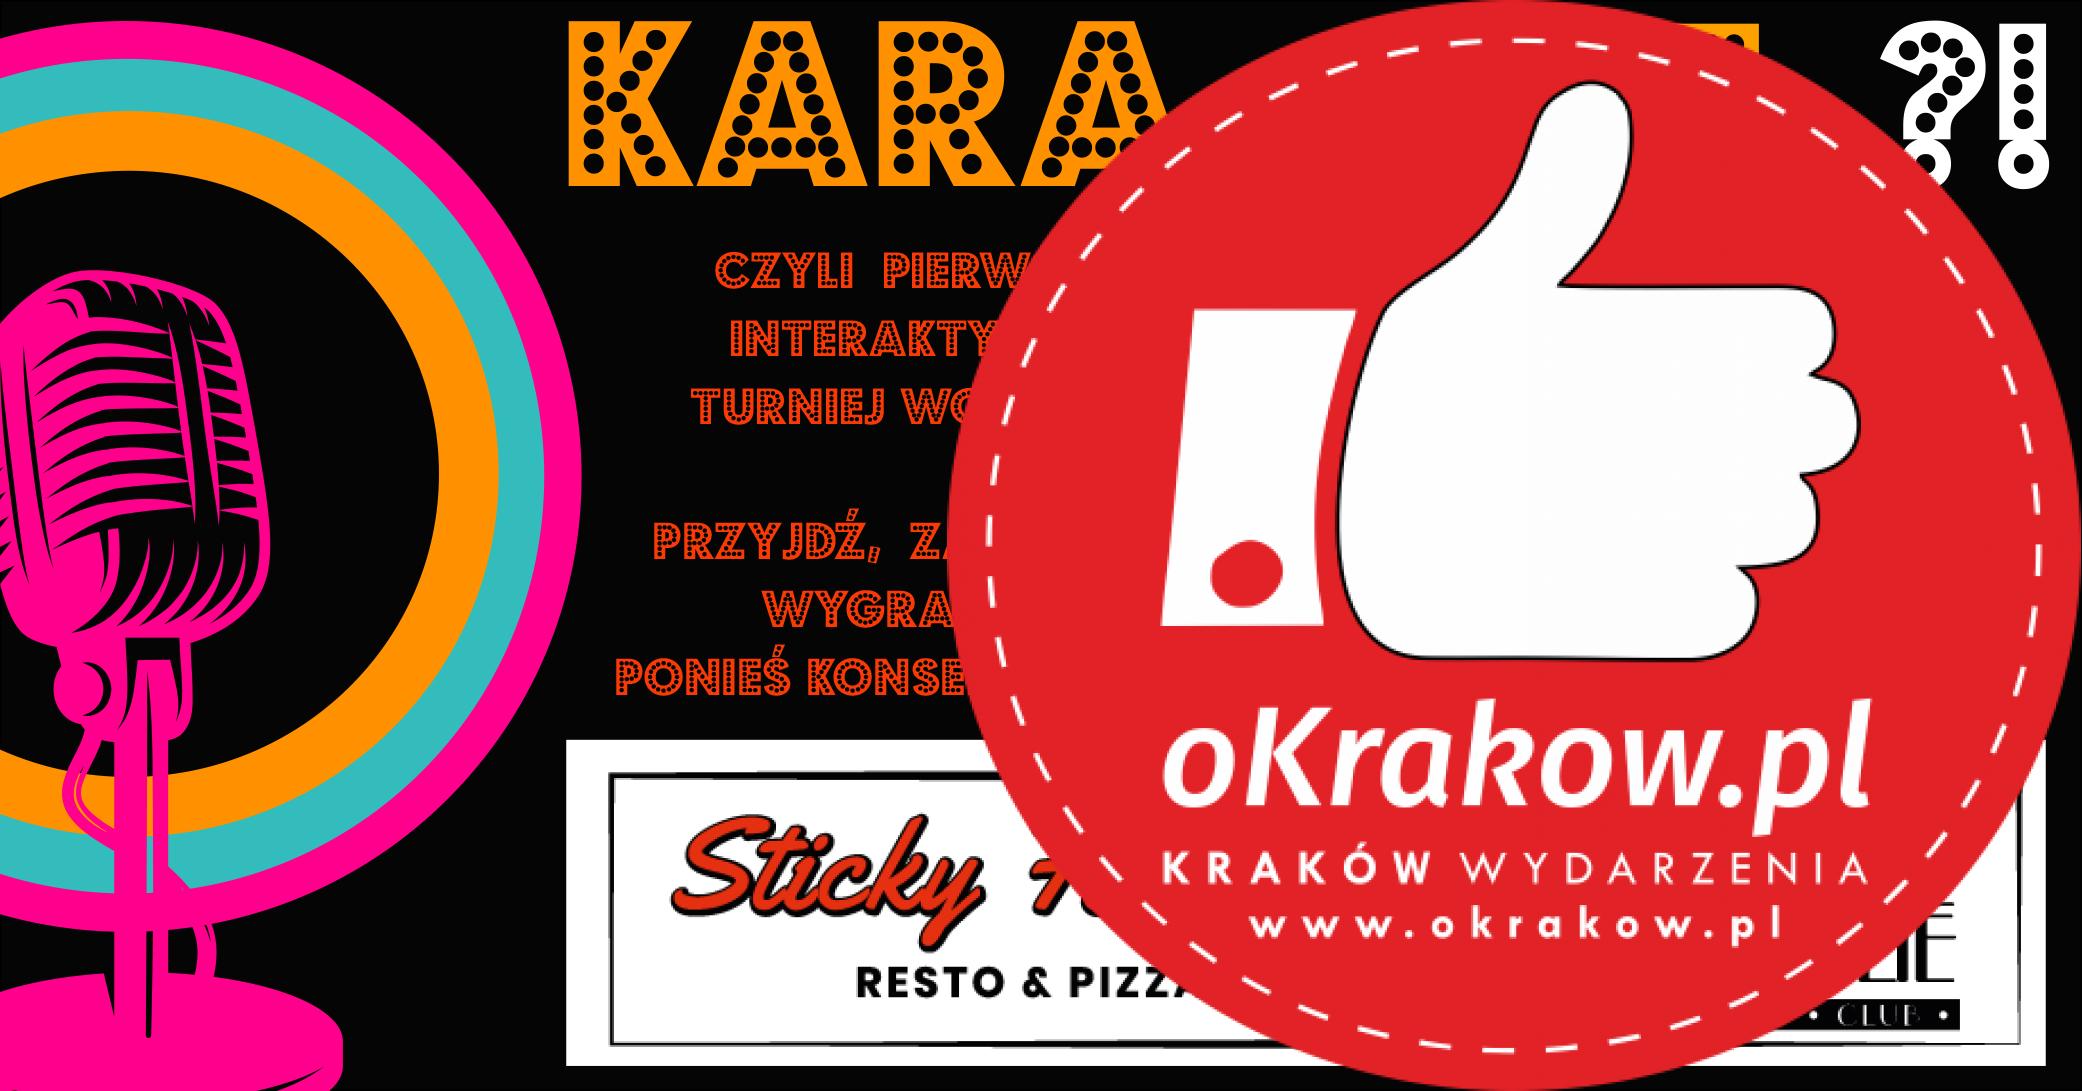 1 - KARAczyOKEj ?! - pierwszy interaktywny turniej wokalny w Krakowie!